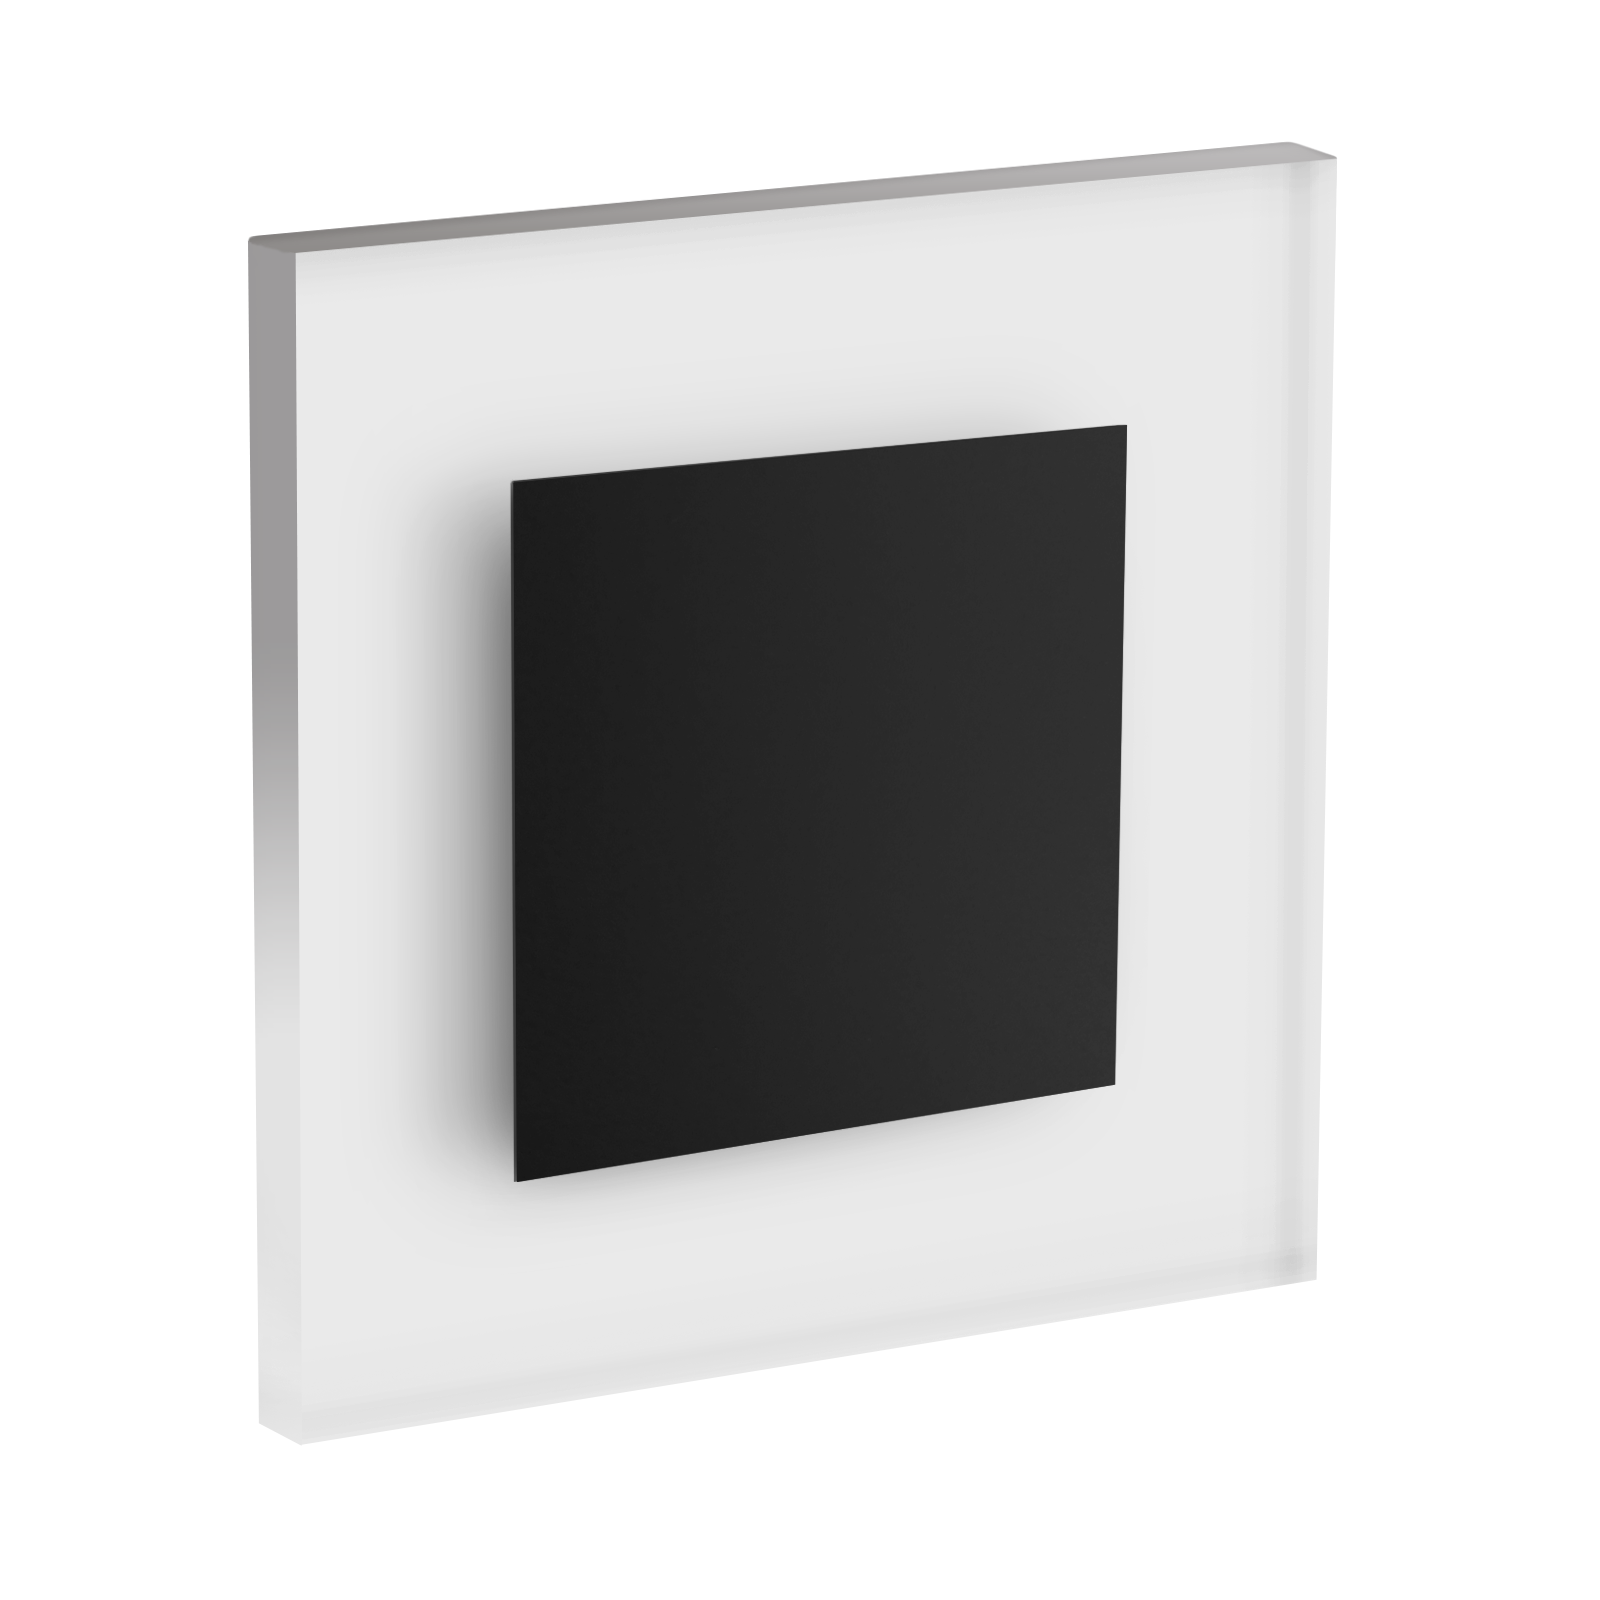 LED Wandeinbaustrahler Treppenlicht Wandeinbauleuchte warmweiß flach Satinglas quadratisch WB1B 12V